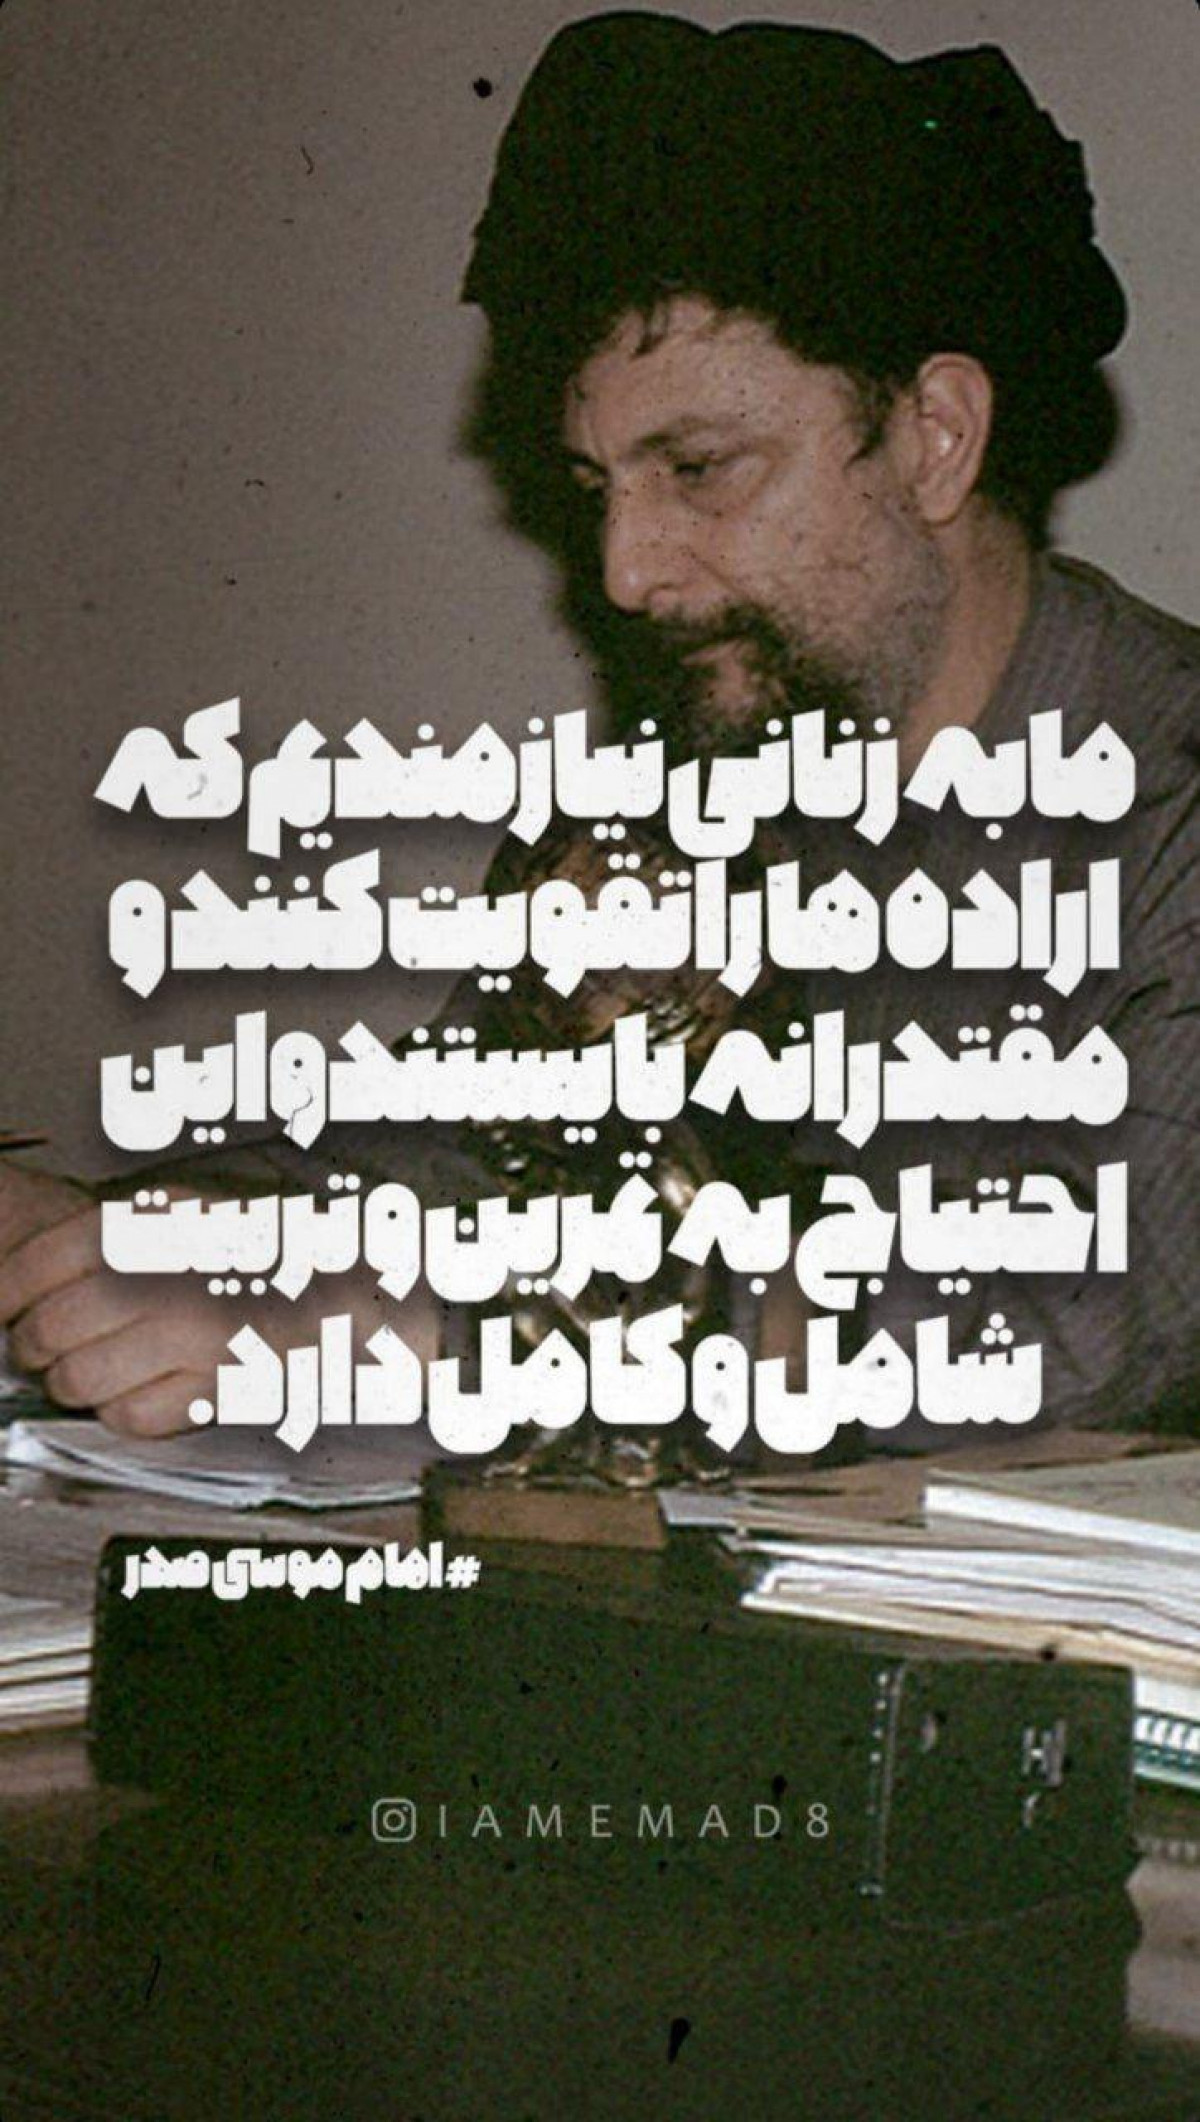 پوستر : گزیده ای از صحبتهای شهید امام موسی صدر